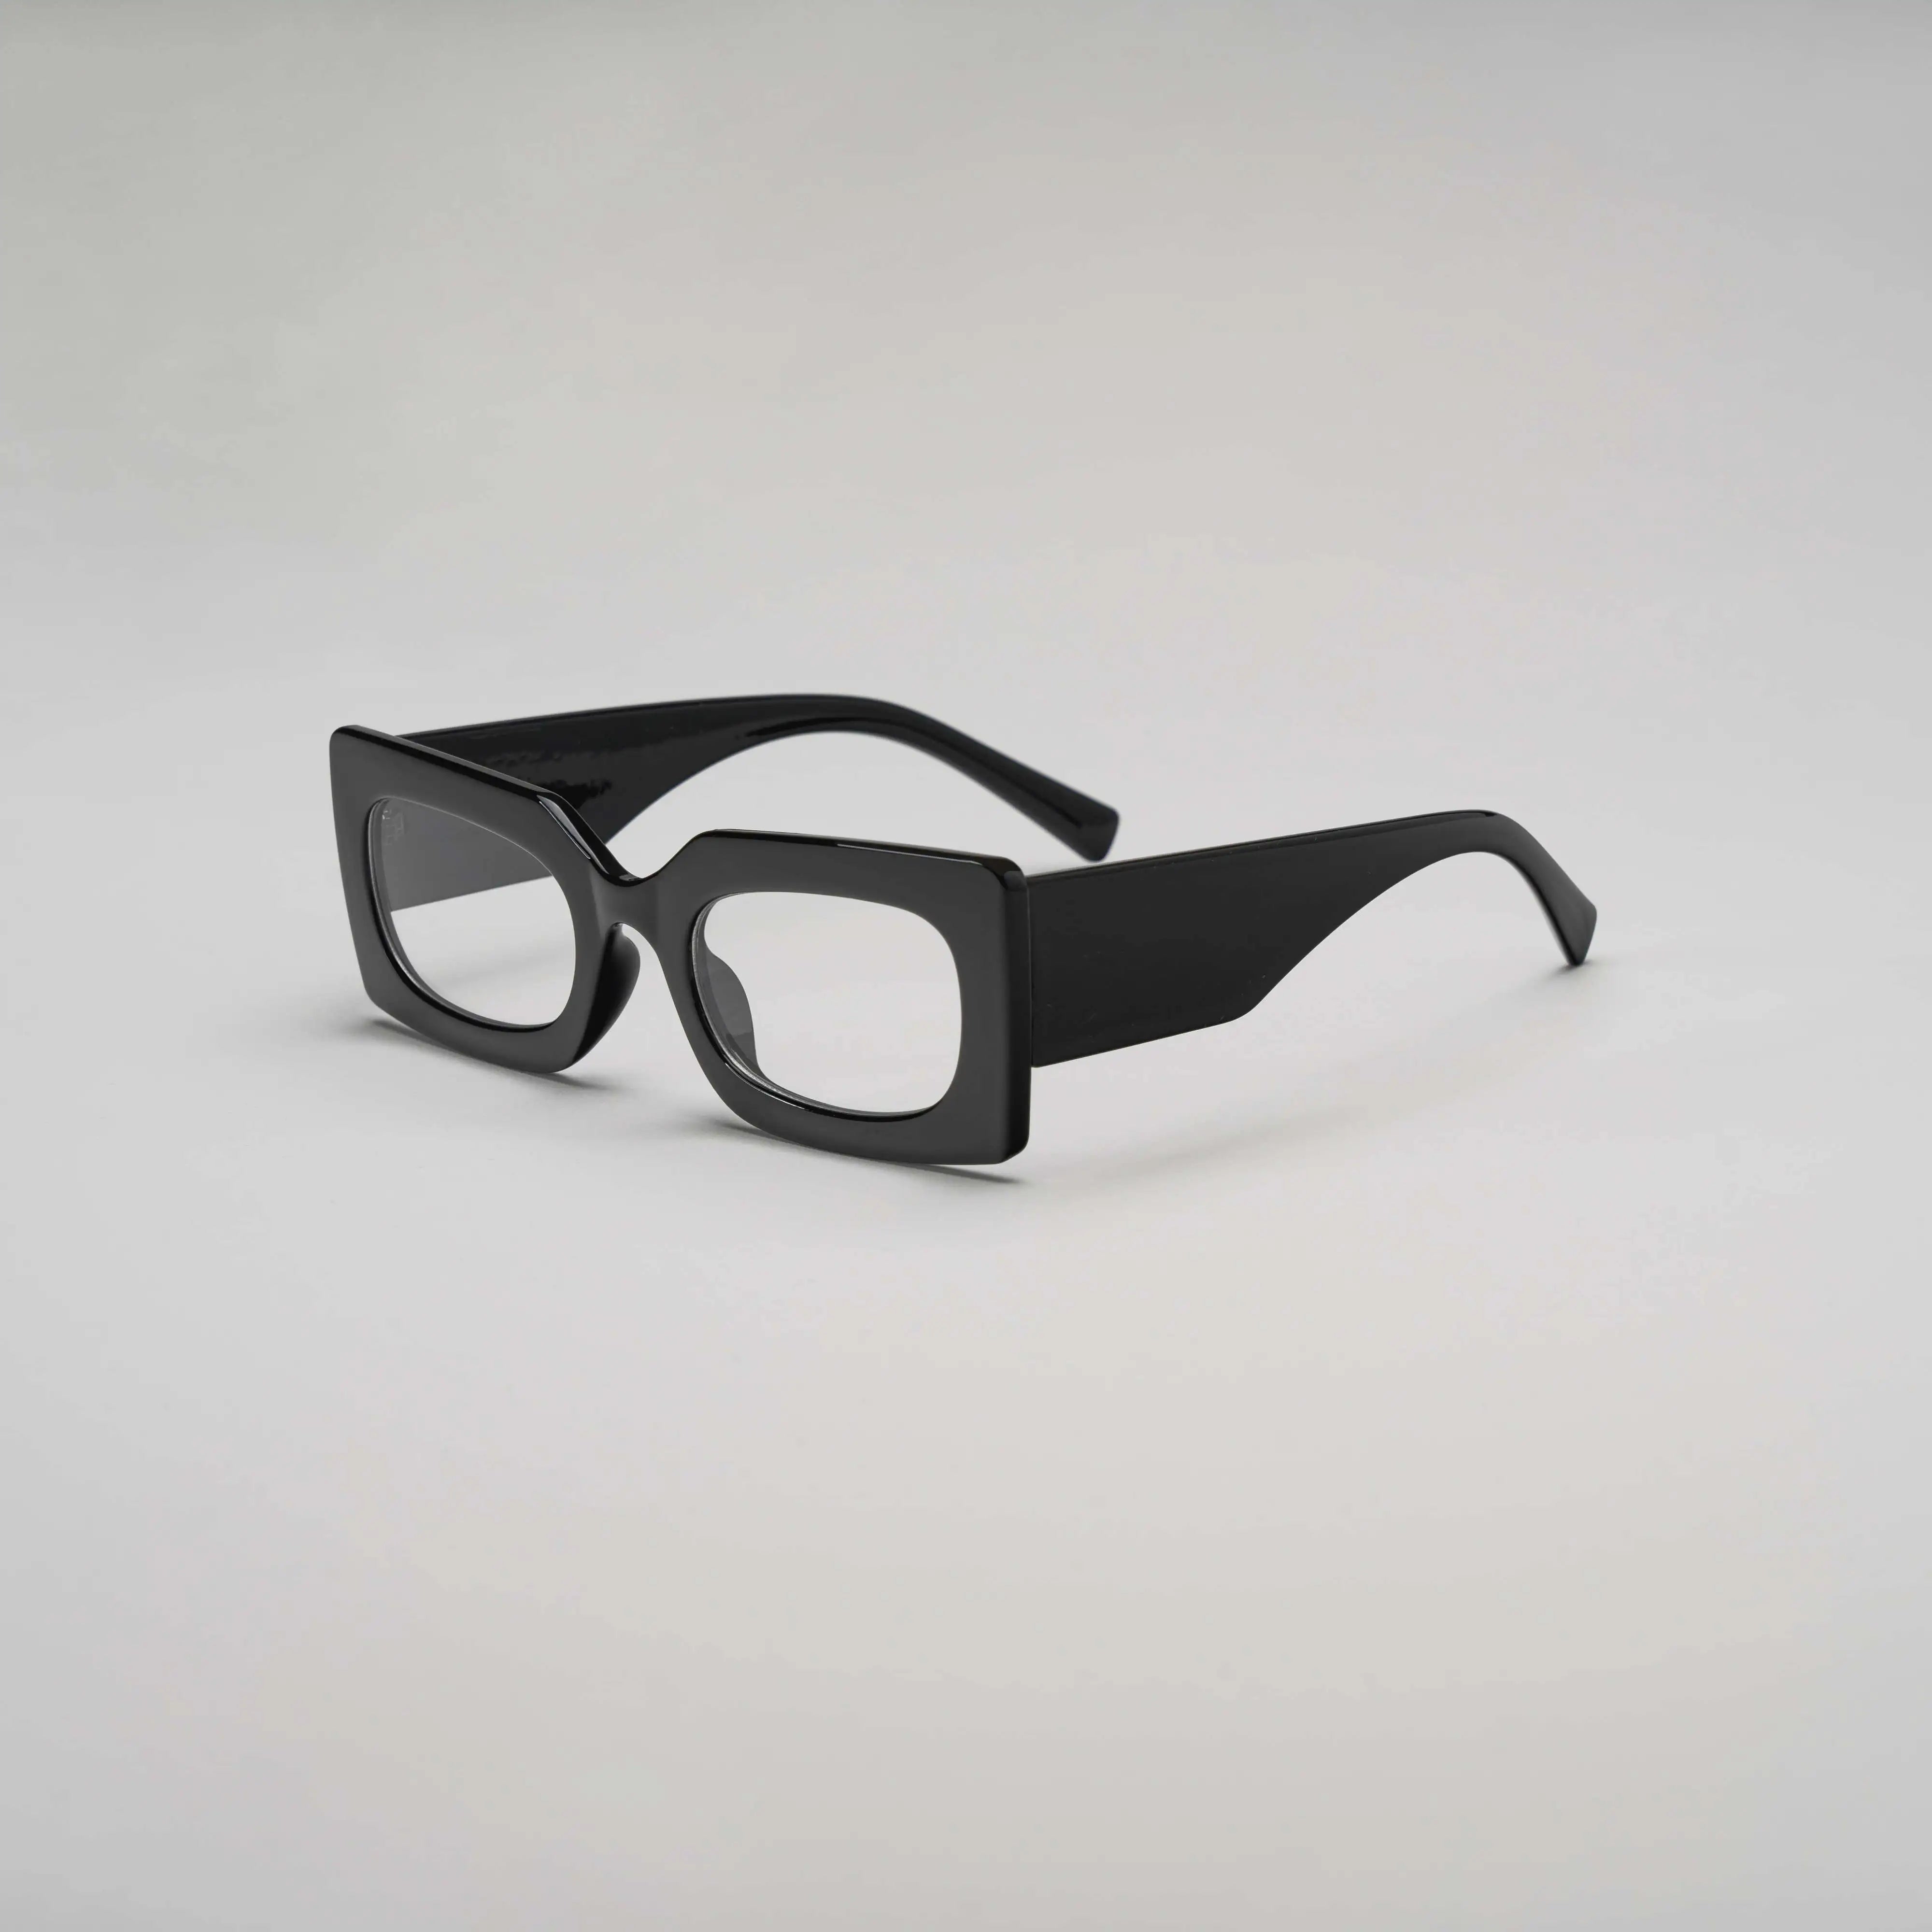 'No Tints' Retro Square Sunglasses in Black